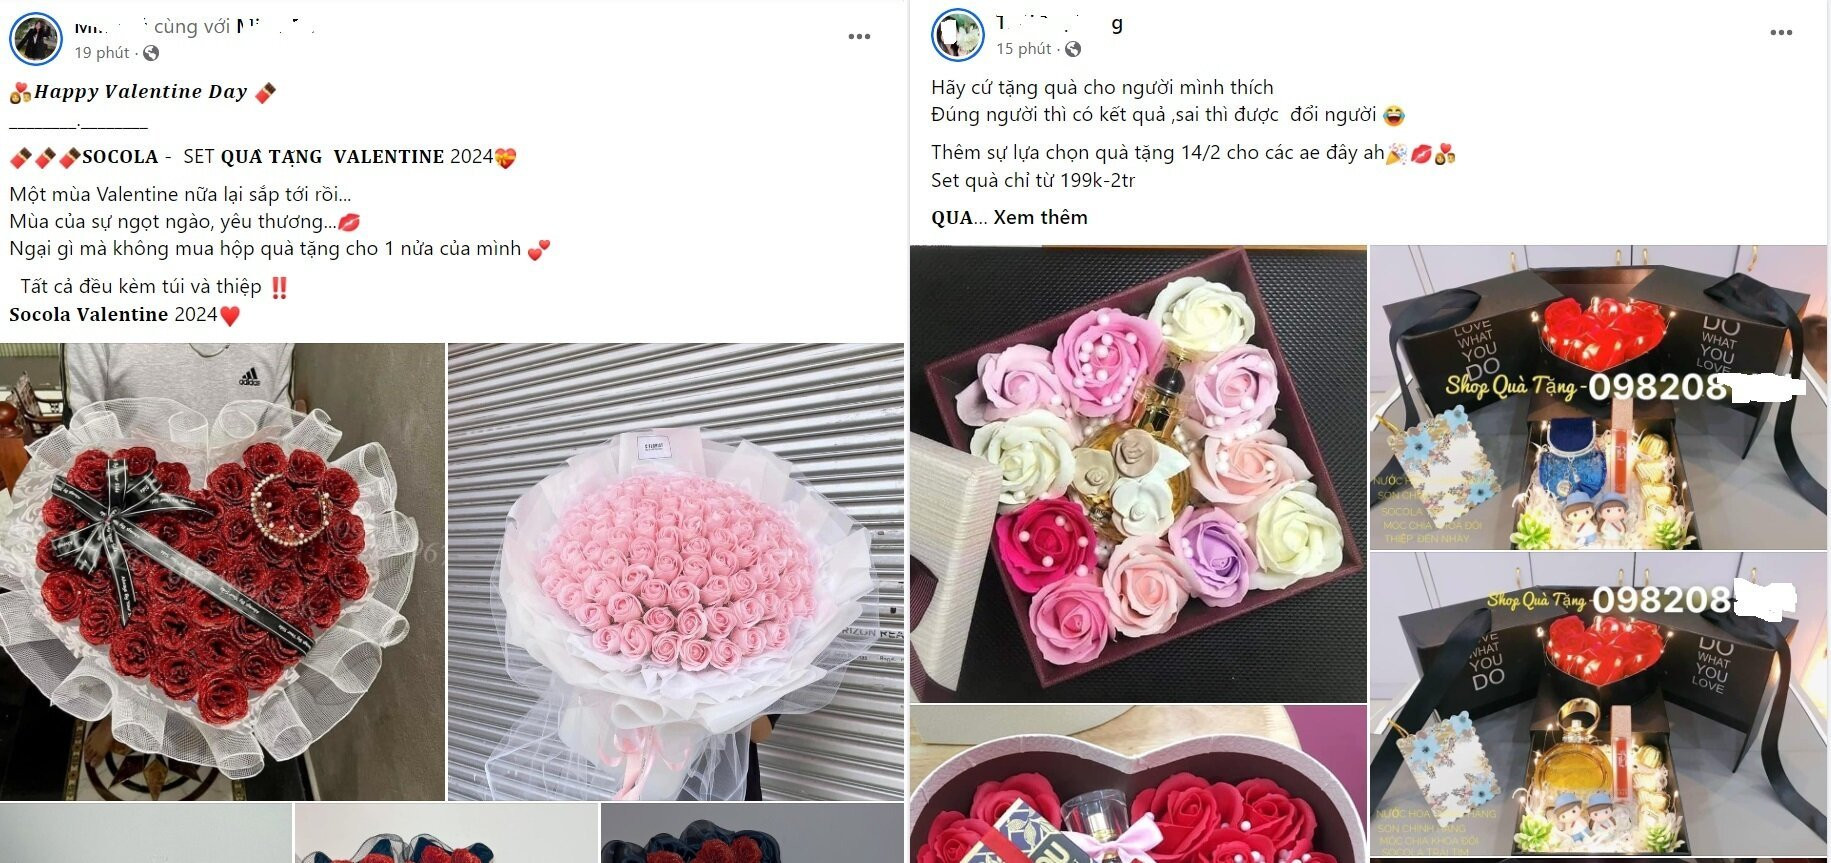 Nhiều sản phẩm quà tặng Valentine được rao bán tràn ngập các chợ mạng. (Ảnh chụp màn hình)